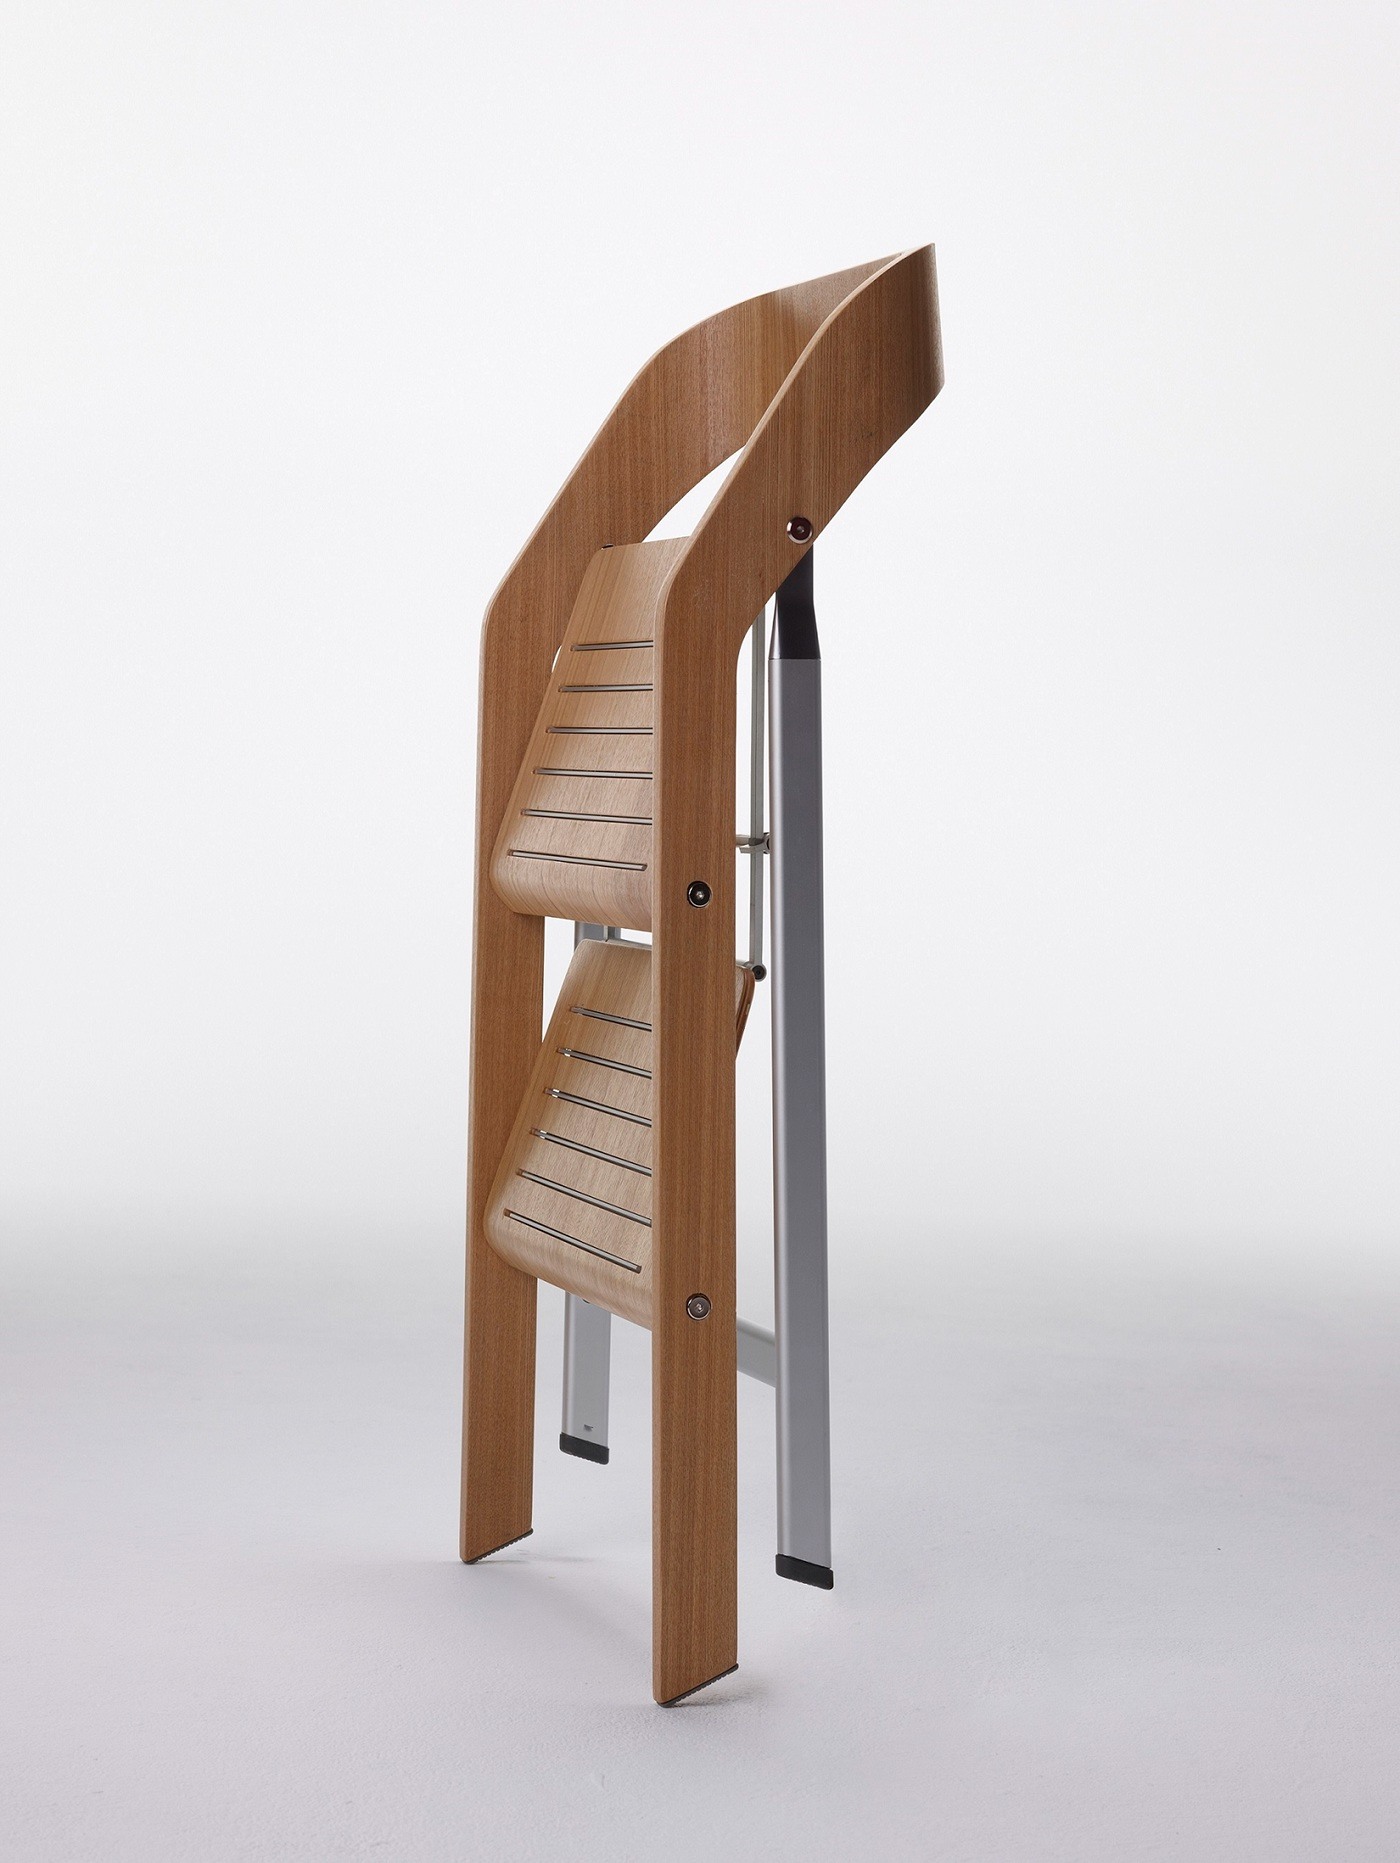 工业设计,产品设计,工具,折叠,座椅,梯子